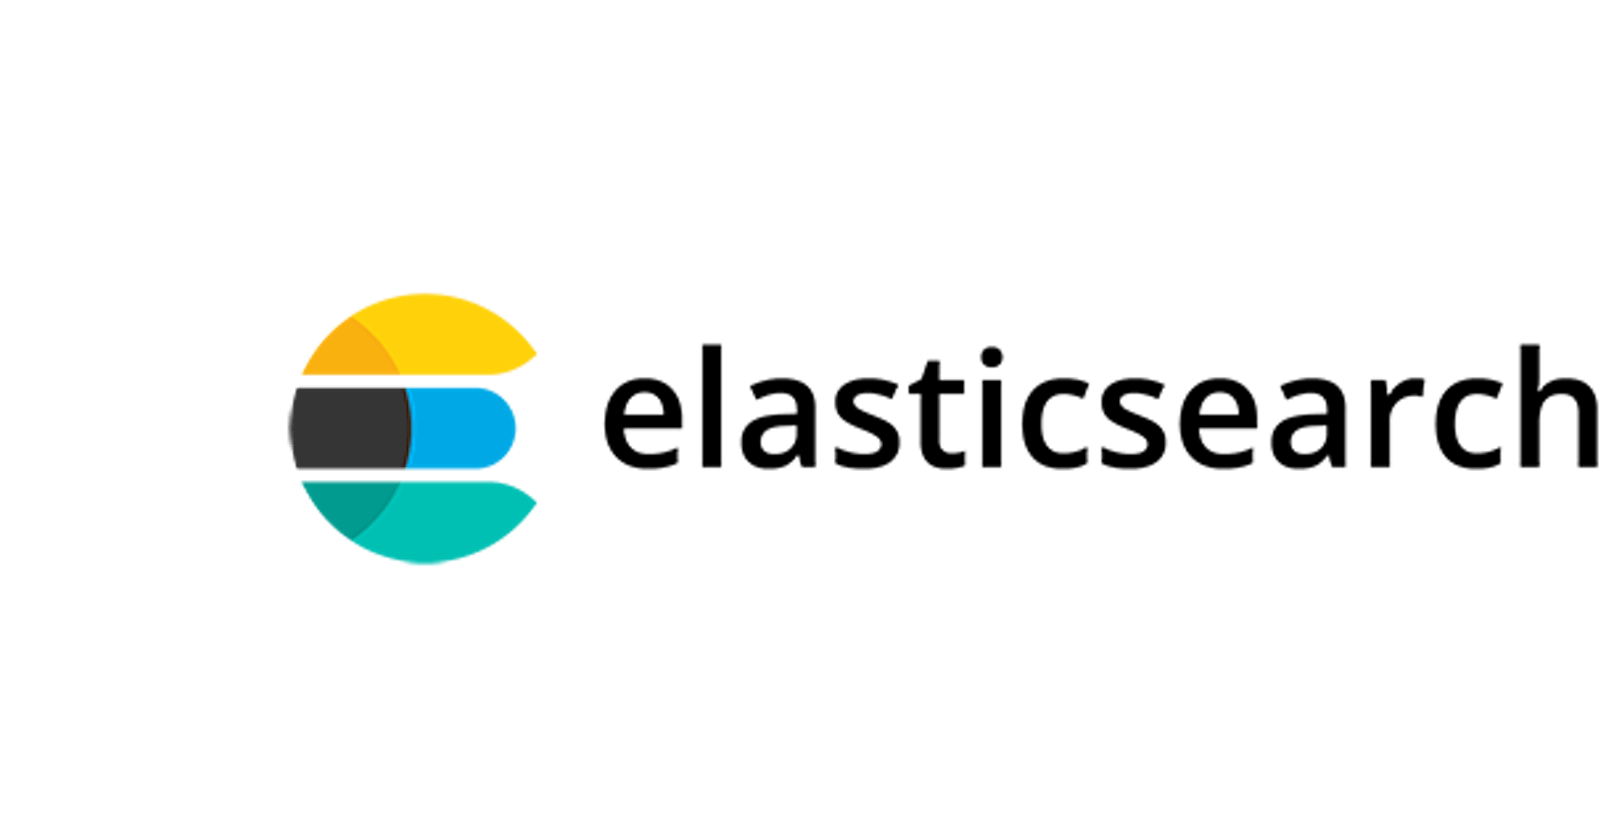 Basics of Elasticsearch for Developer